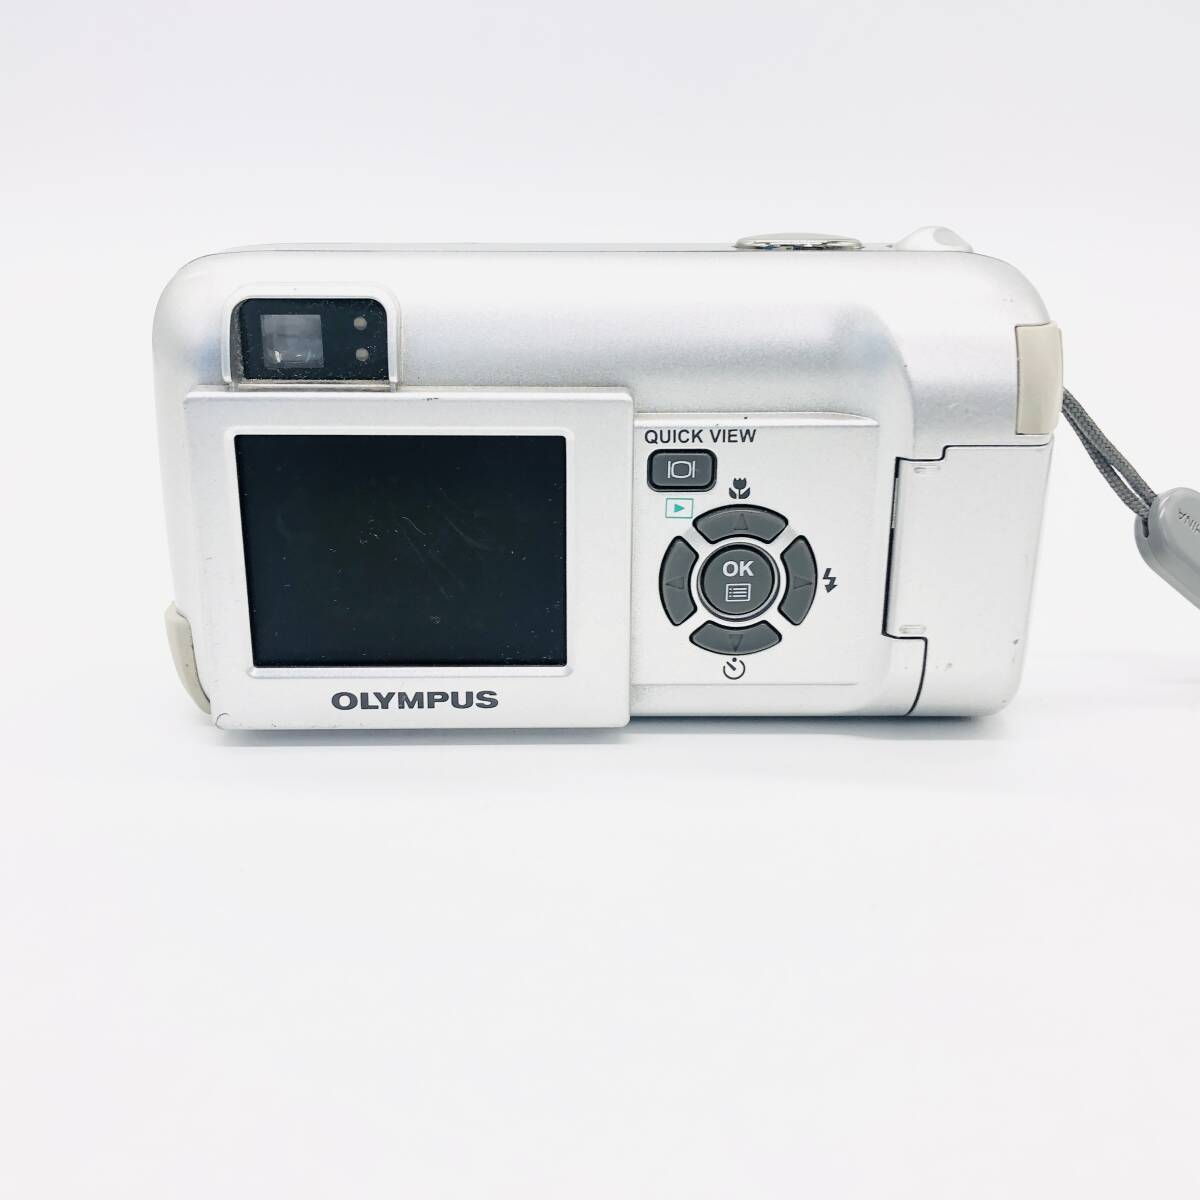 保管品 通電動作未確認 OLYMPUS オリンパス CAMEDIA X-200 ZOOM 5.8mm -17.4mm シルバー コンパクト カメラ_画像4